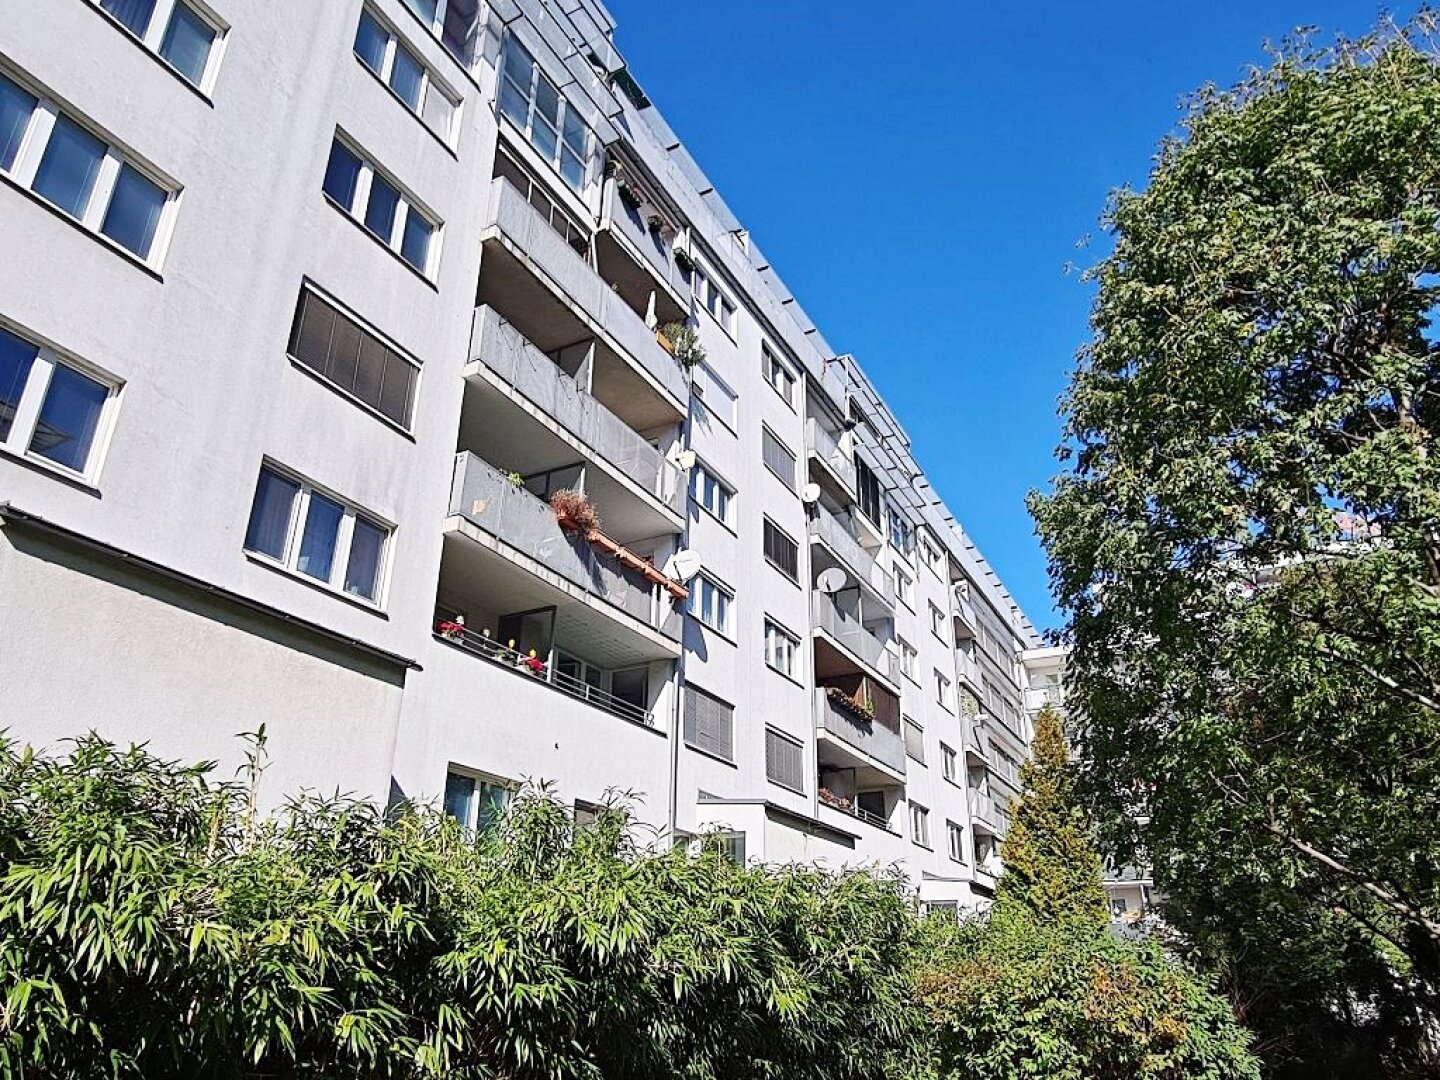 TOKIOSTRASSE, DZ-Nähe, 92 m2 Neubau inkl. 7 m2 Loggia, Wohnküche, 2 Zimmer, Wannenbad, Parketten, 1. Liftstock, Ruhelage